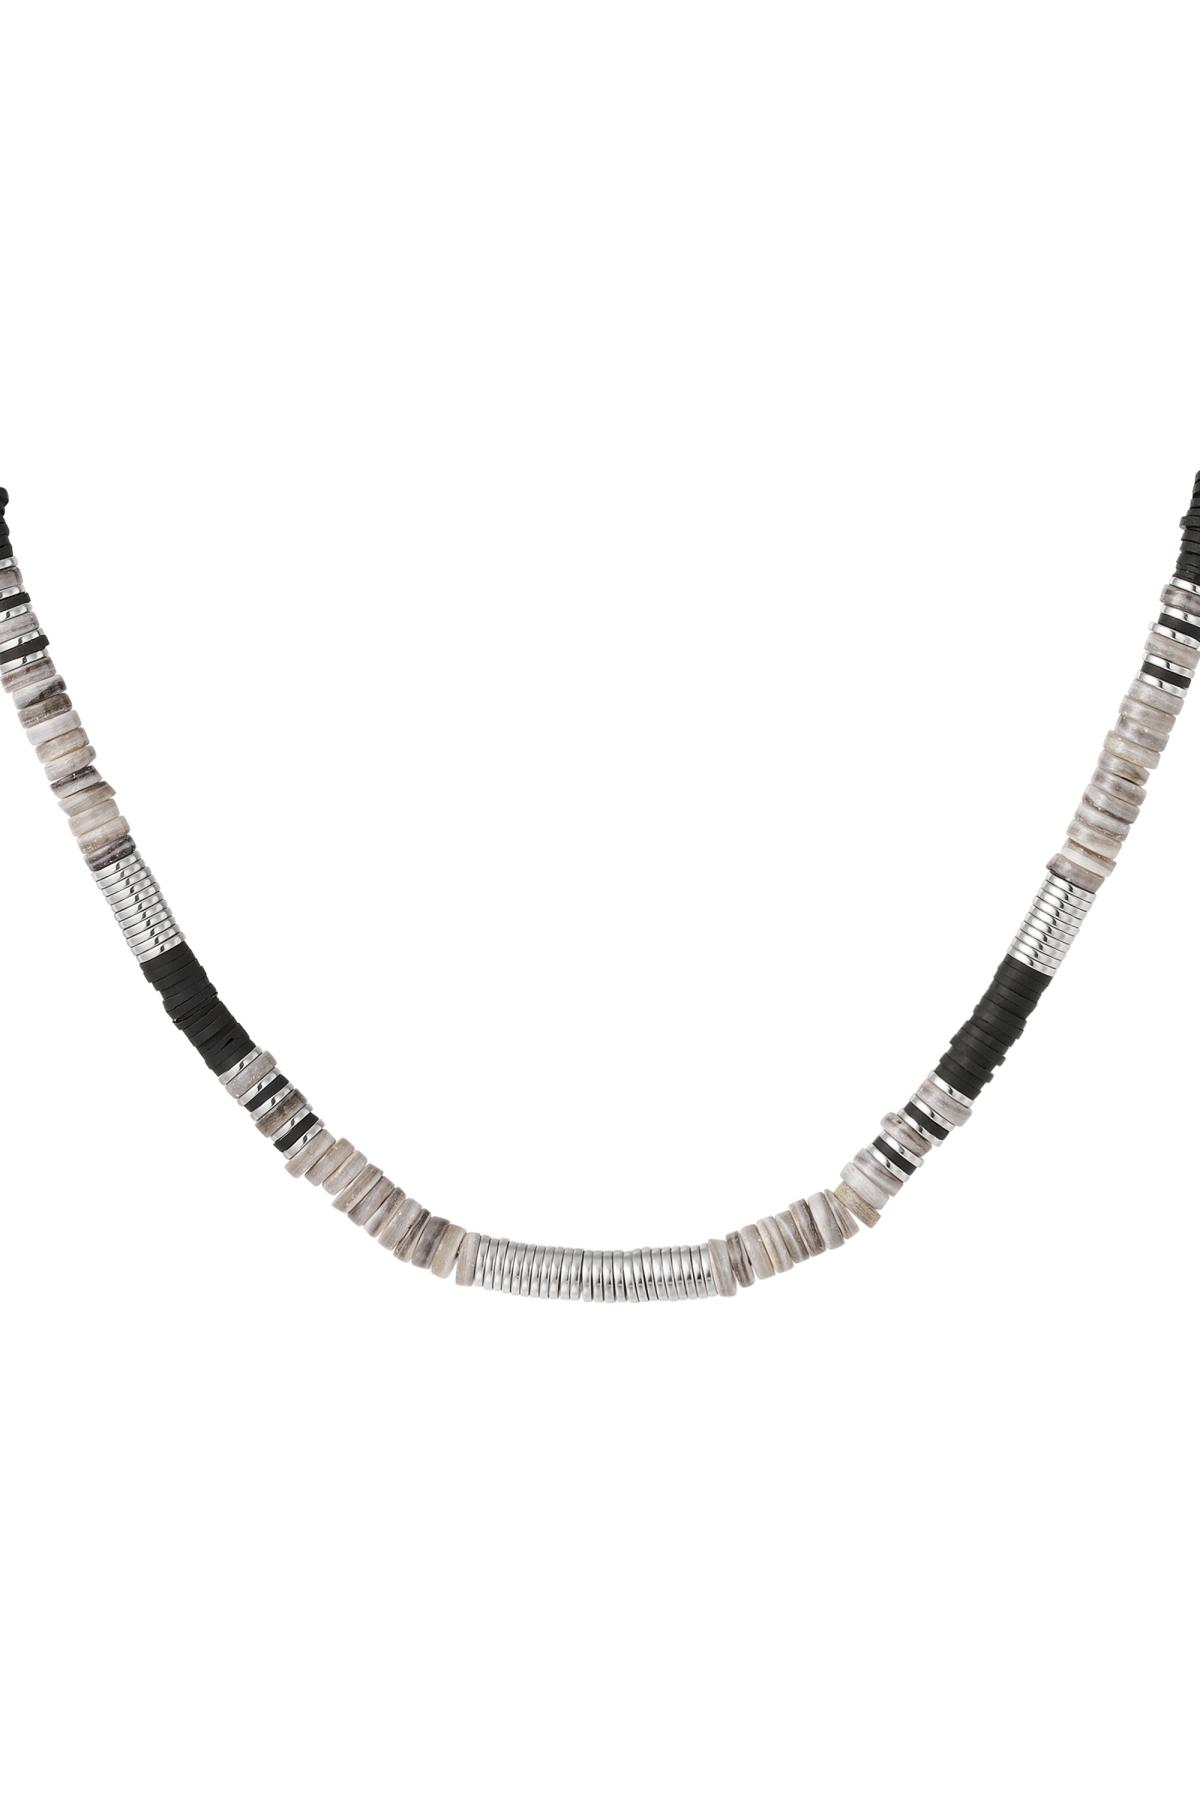 Halskette verschiedene Perlen Grau polymer clay 